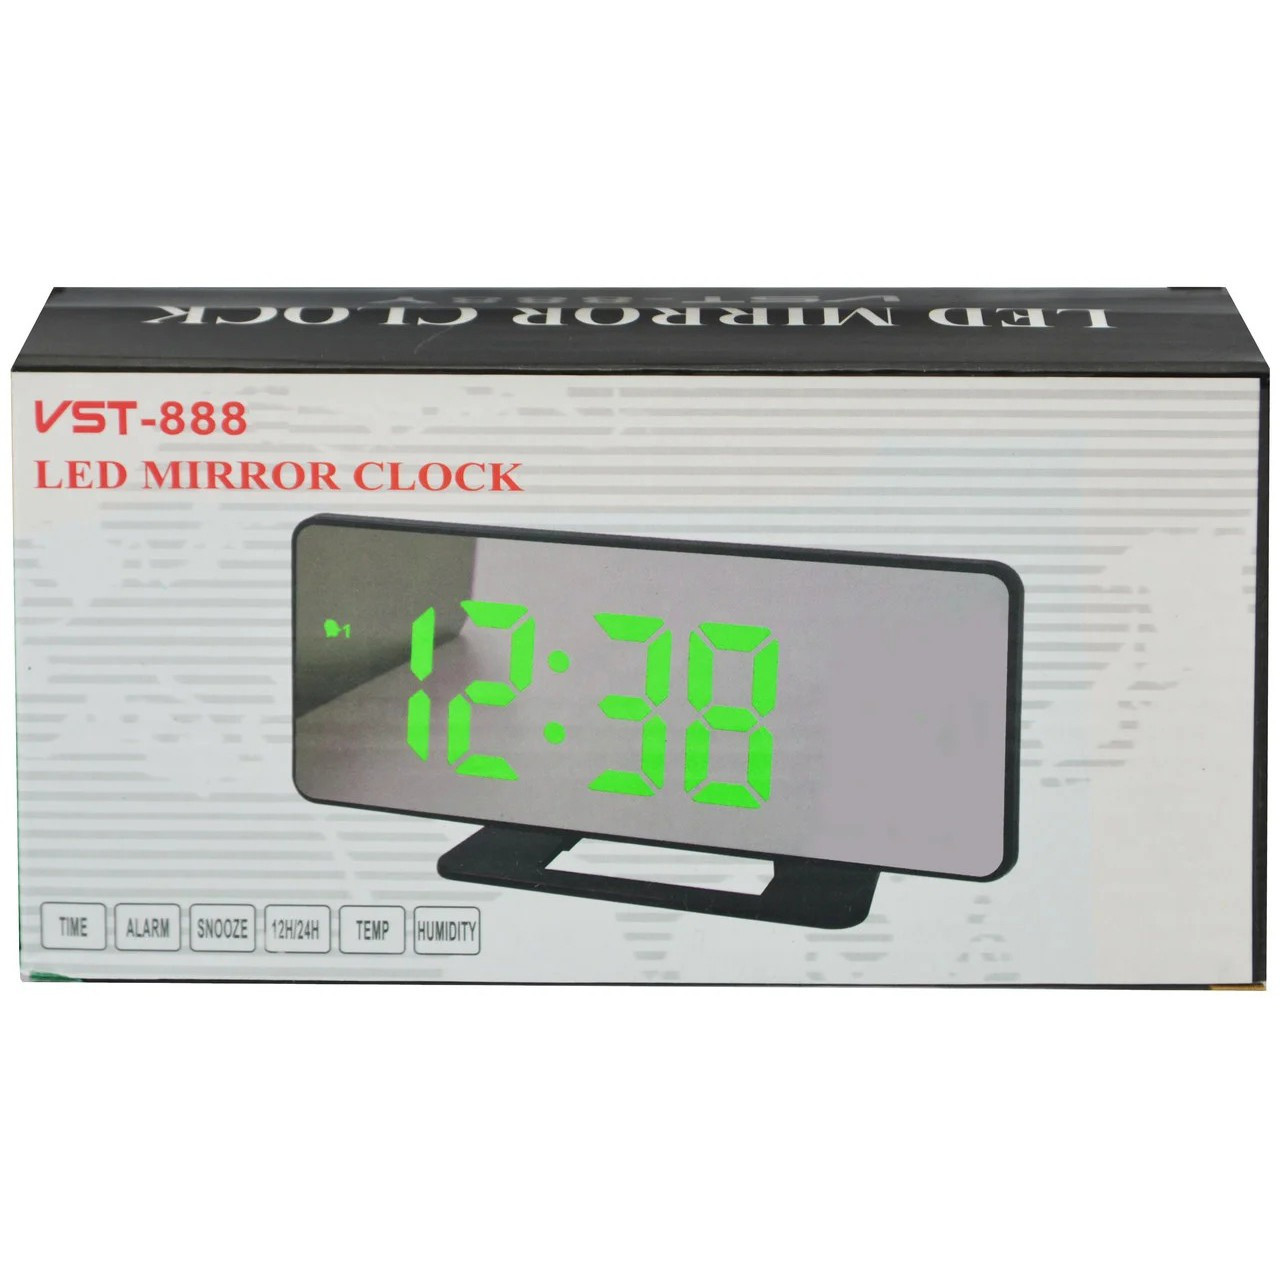 Часы электронные настольные 888y. Часы VST 888. Часы настольные VST 888y. Часы будильник электронные настольные VST-888 зеркальные. Блок питания для часов VST 888.